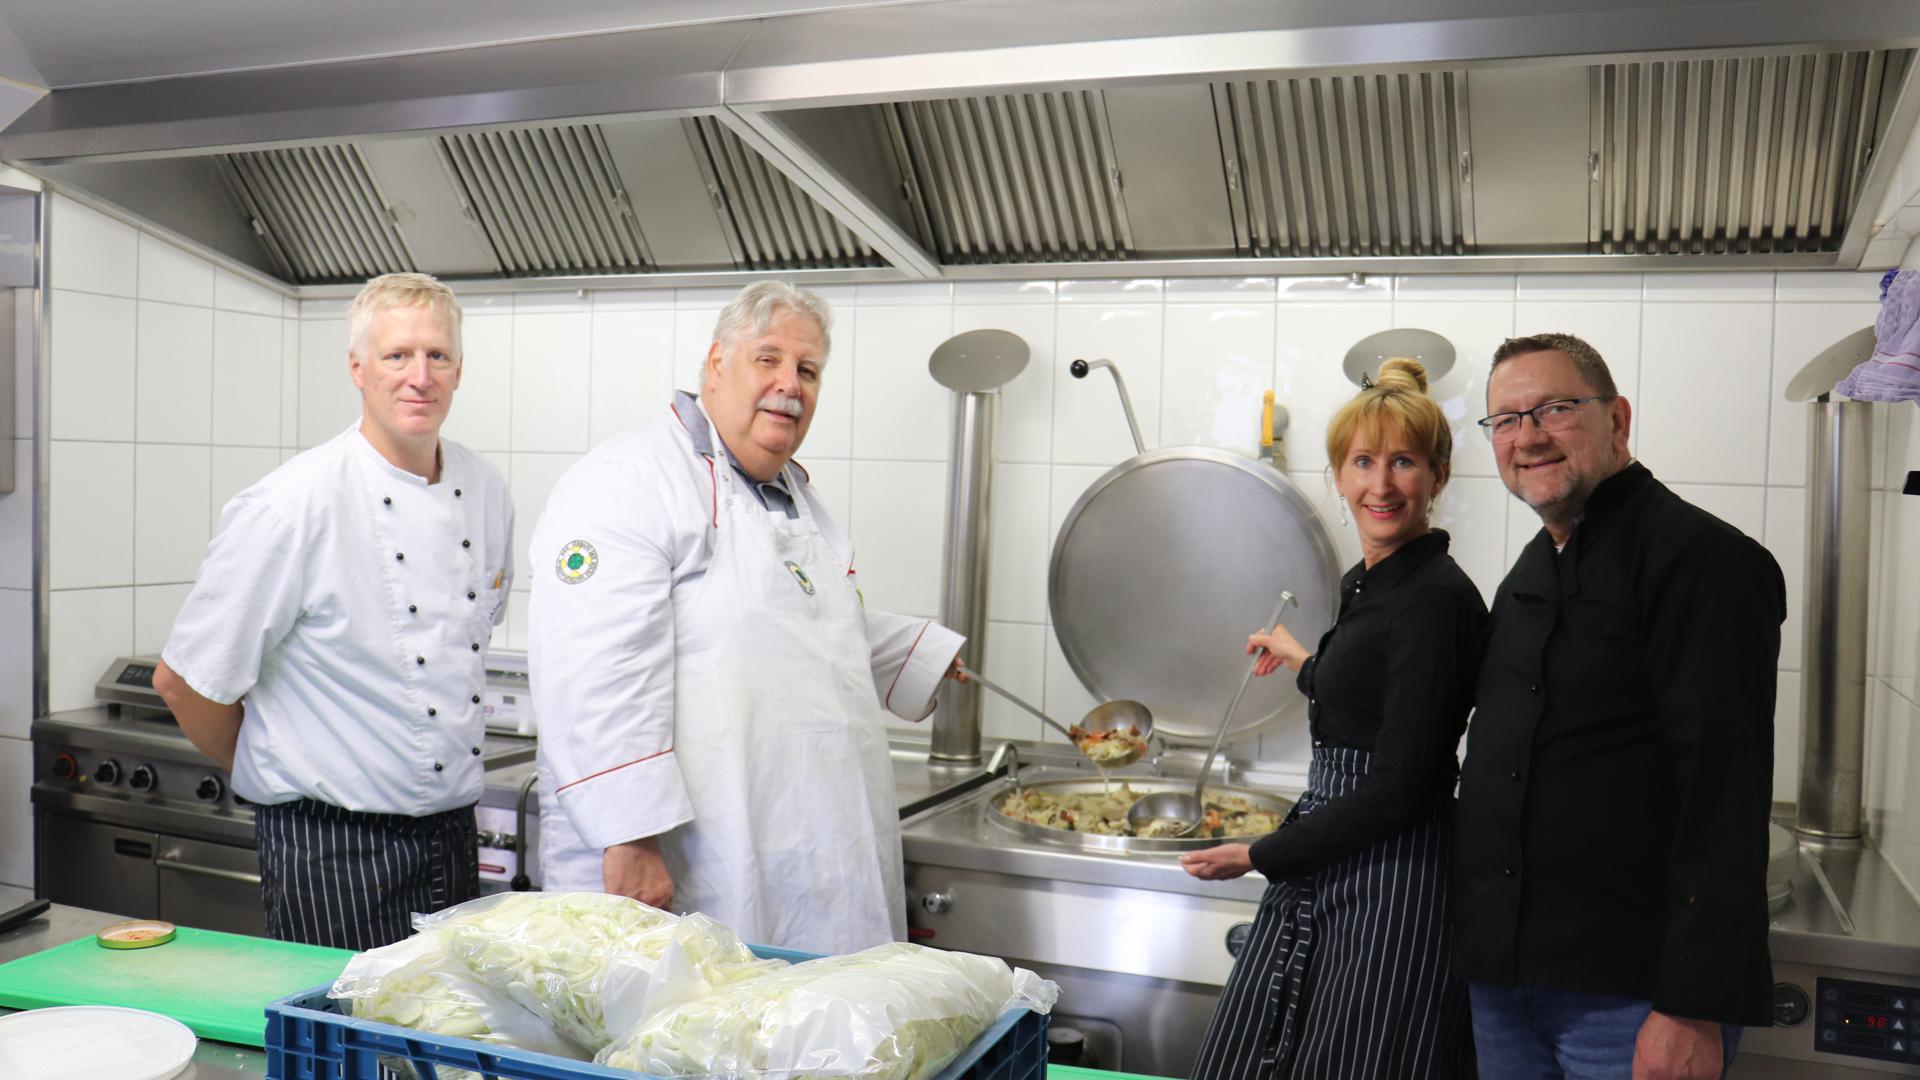 Mitglieder des Kochvereins vor den riesigen Suppentöpfen in der Küche des Pädagogiums in Baden-Baden